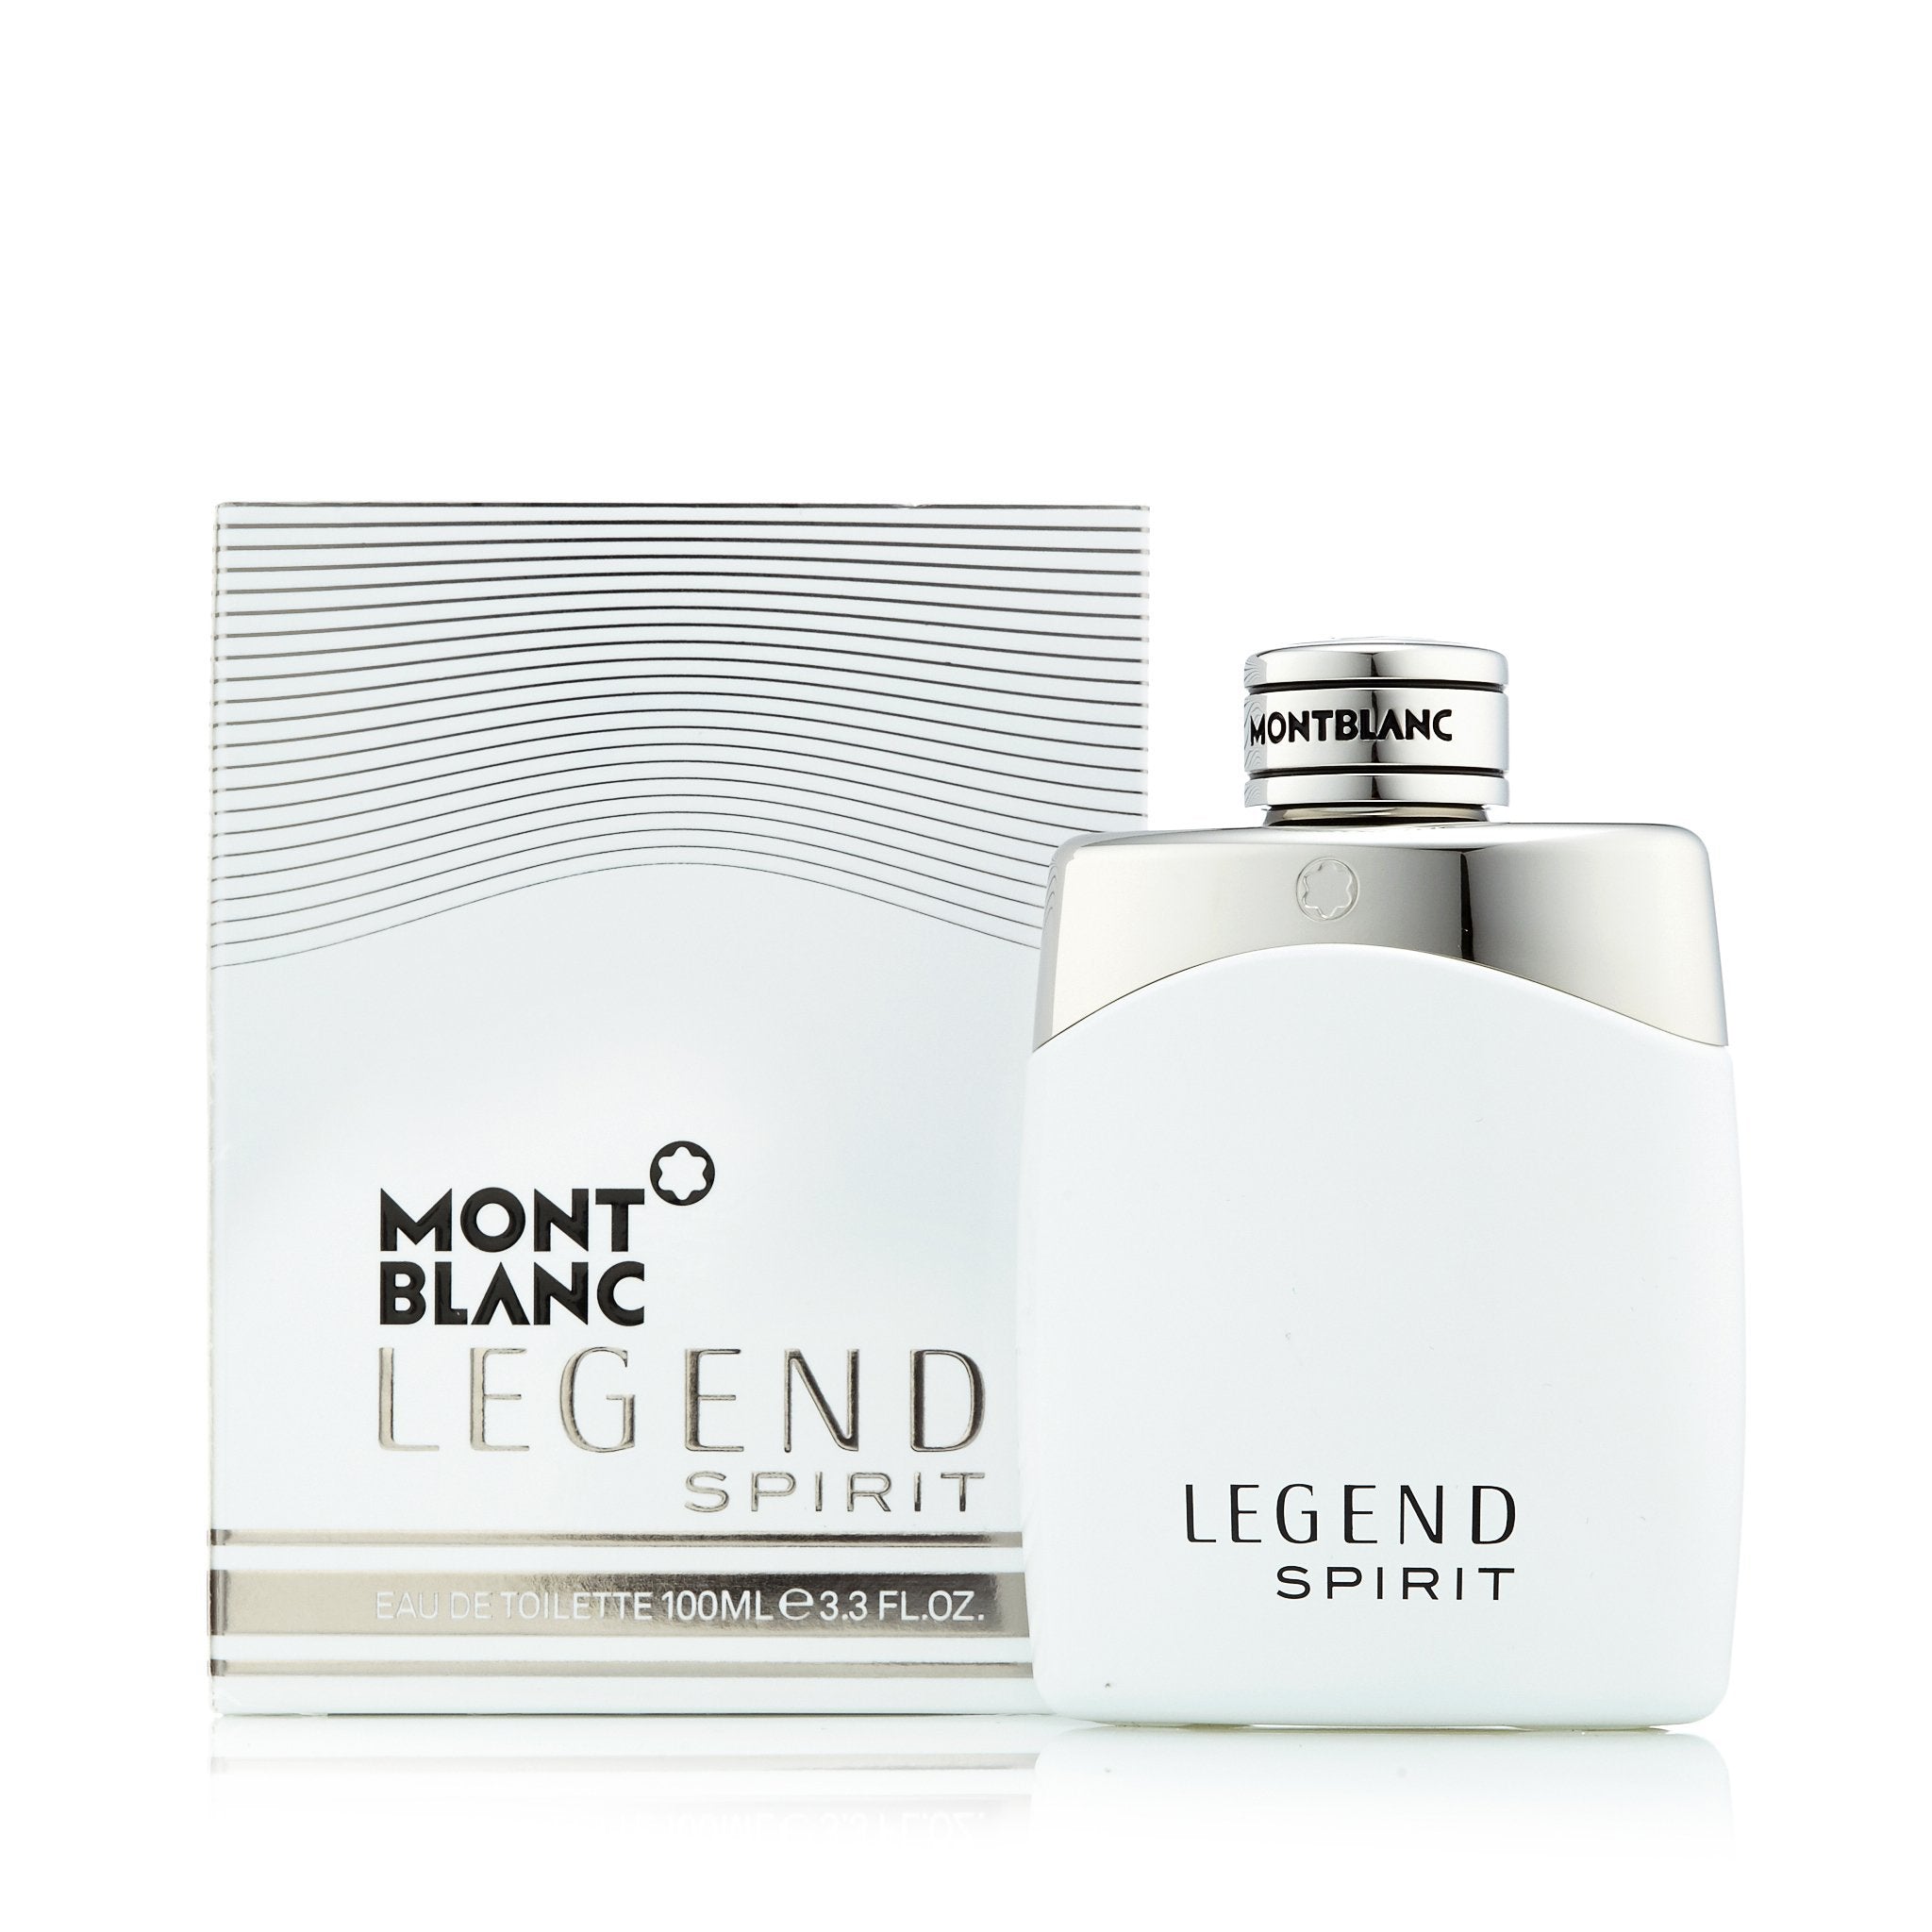  MONTBLANC Legend Spirit Cologne For Men 1.7 Fl Oz Eau De  Toilette Spray : Beauty & Personal Care